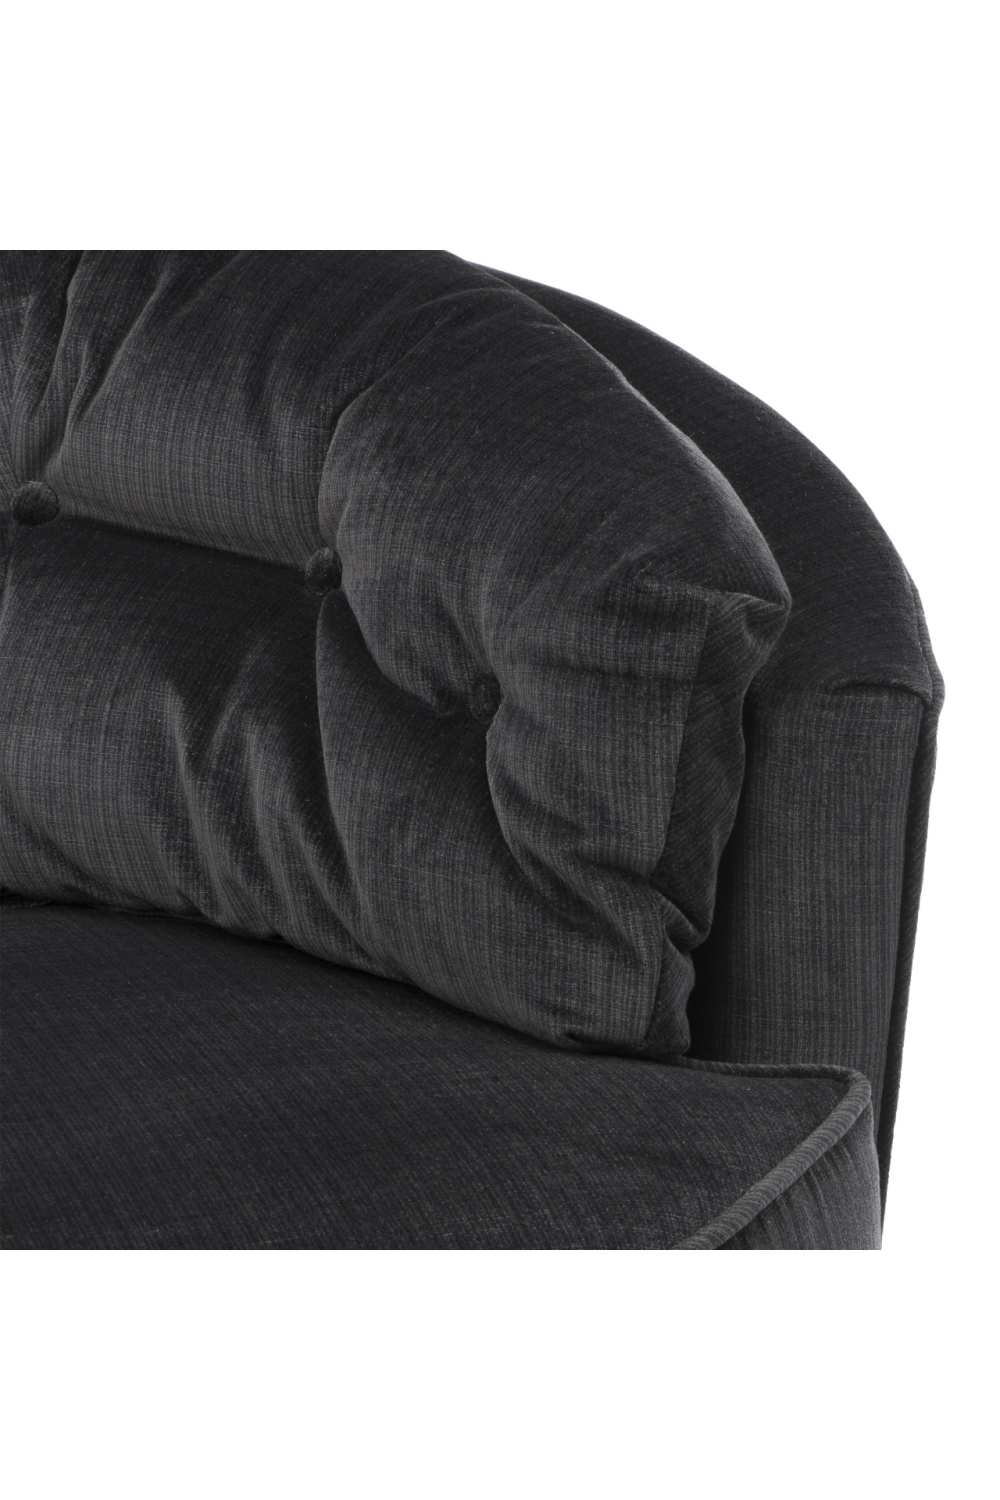 Black Velvet Swivel Chair | Eichholtz Recla | Oroa.com